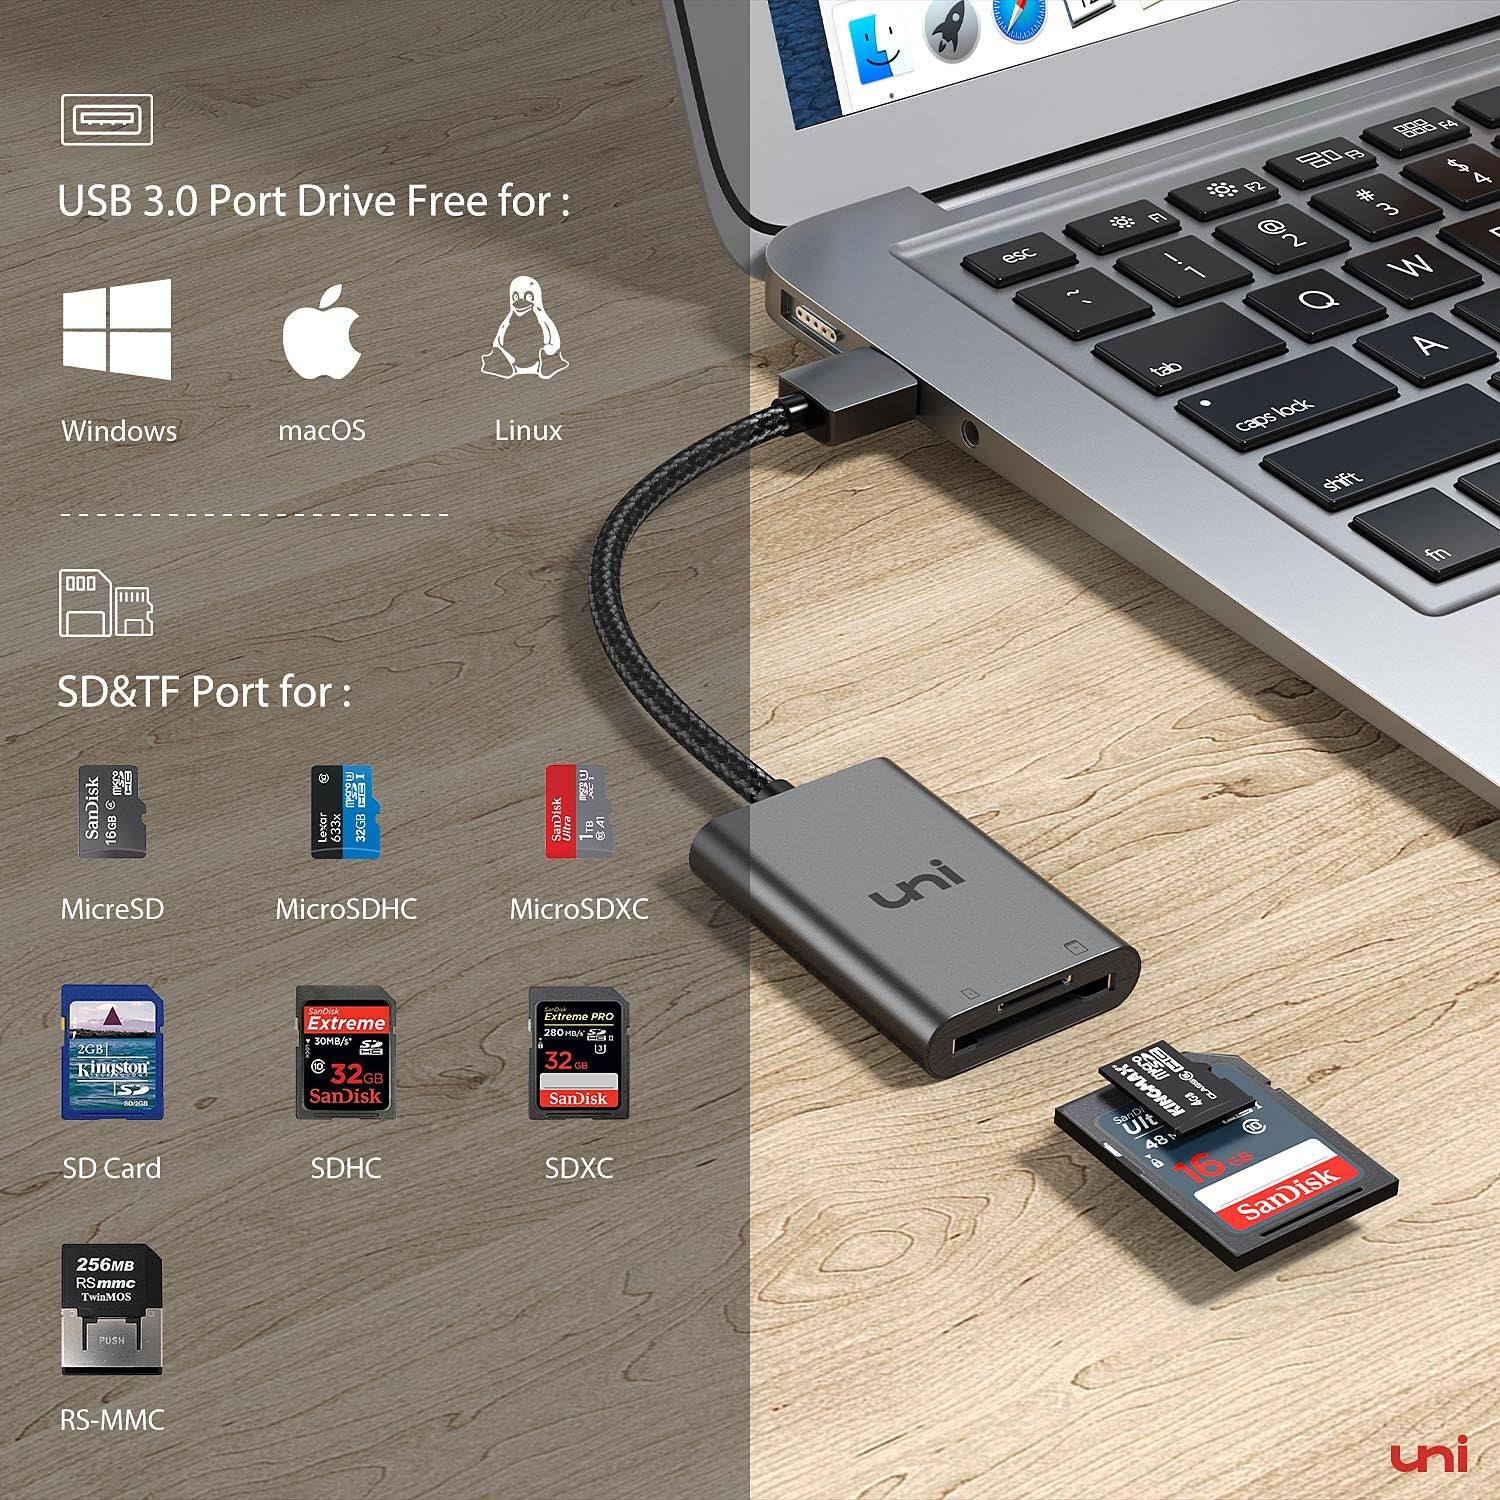 ADAPTADOR MEMORIA MICRO SD USB